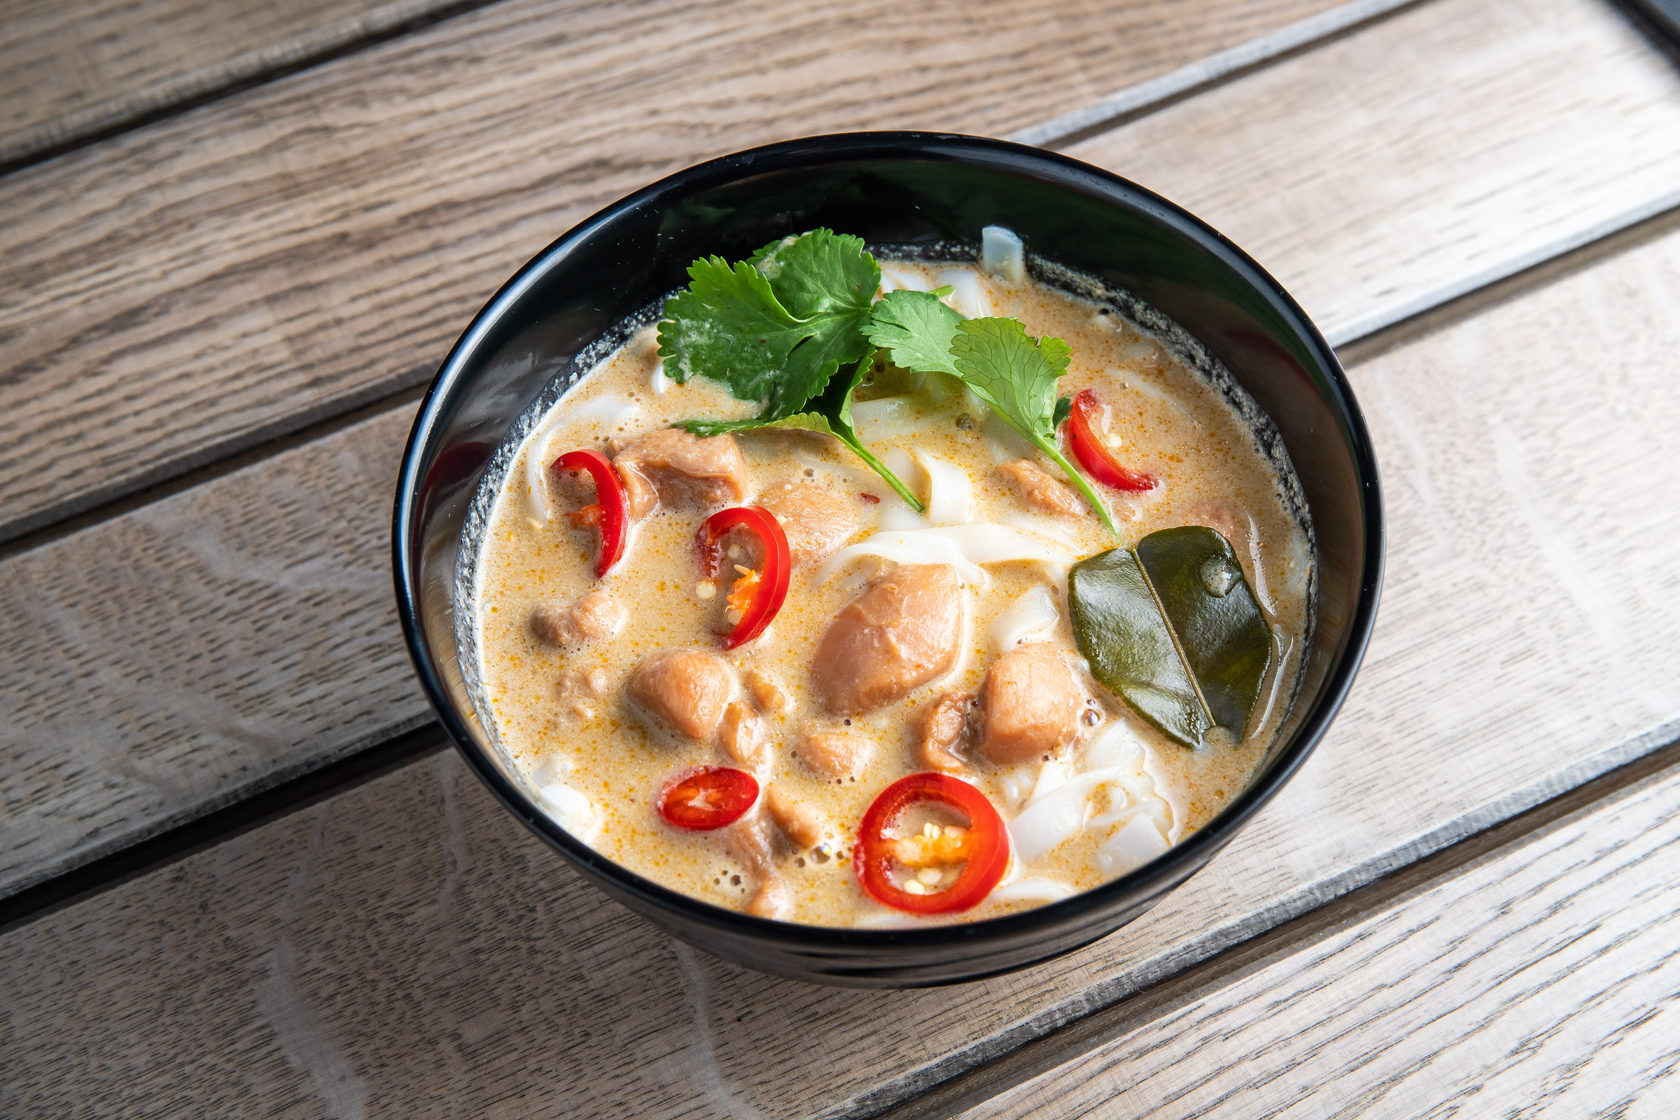 Как приготовить тайский суп том ям в домашних условиях. рецепты кокосового супа том ям пошагово с фото. вкусный том ям с курицей и морепродуктами. как правильно едят суп том ям. рецепты супа том ям в домашних условиях